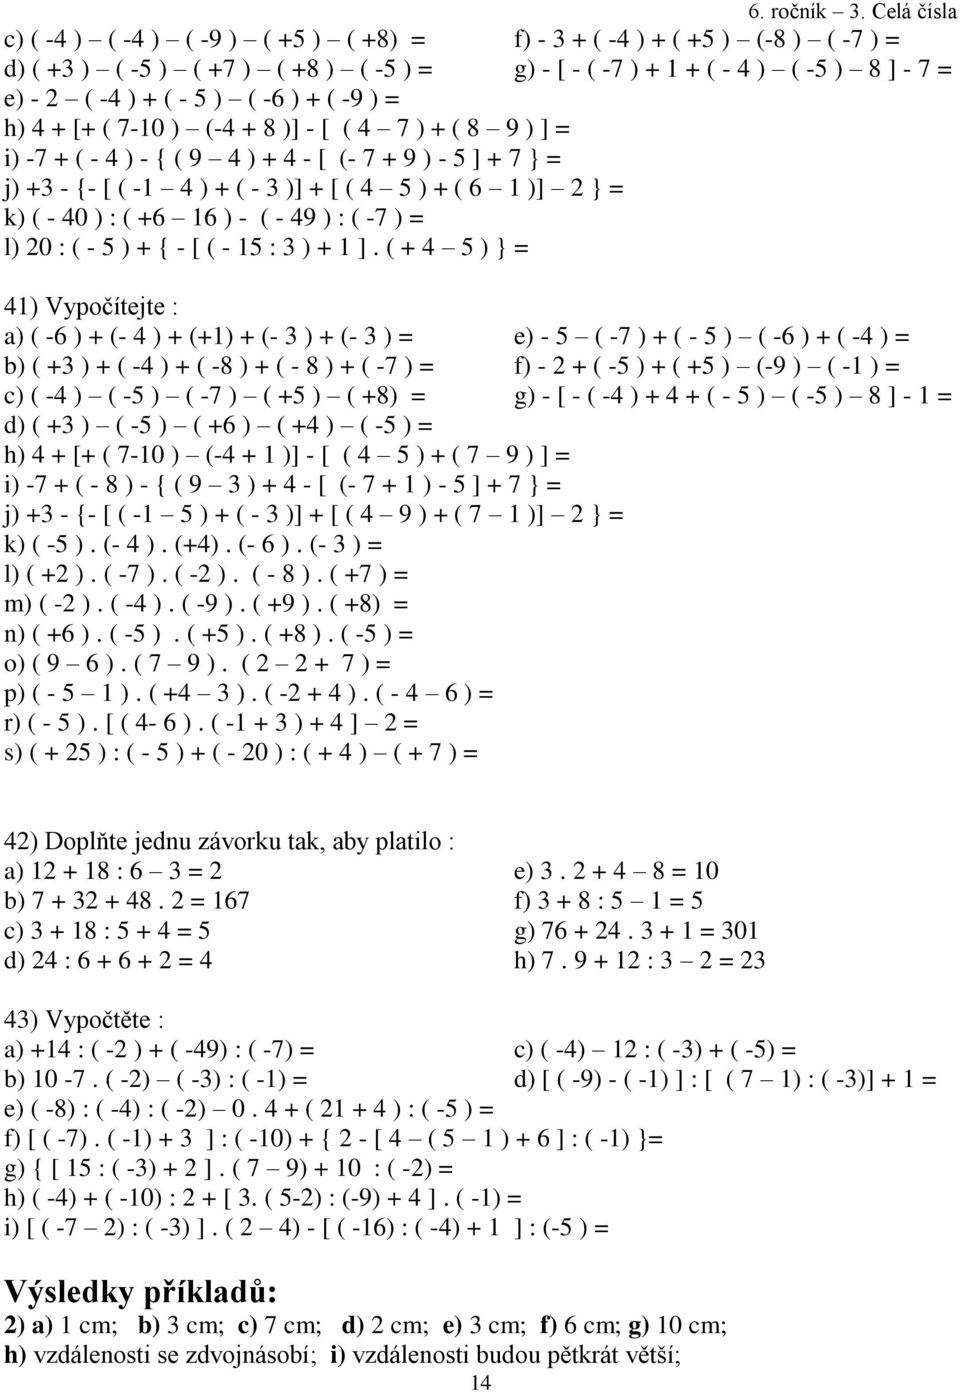 ( + 4 5 ) } = 41) Vypočítejte : a) ( -6 ) + (- 4 ) + (+1) + (- 3 ) + (- 3 ) = b) ( +3 ) + ( -4 ) + ( -8 ) + ( - 8 ) + ( -7 ) = c) ( -4 ) ( -5 ) ( -7 ) ( +5 ) ( +8) = d) ( +3 ) ( -5 ) ( +6 ) ( +4 ) (